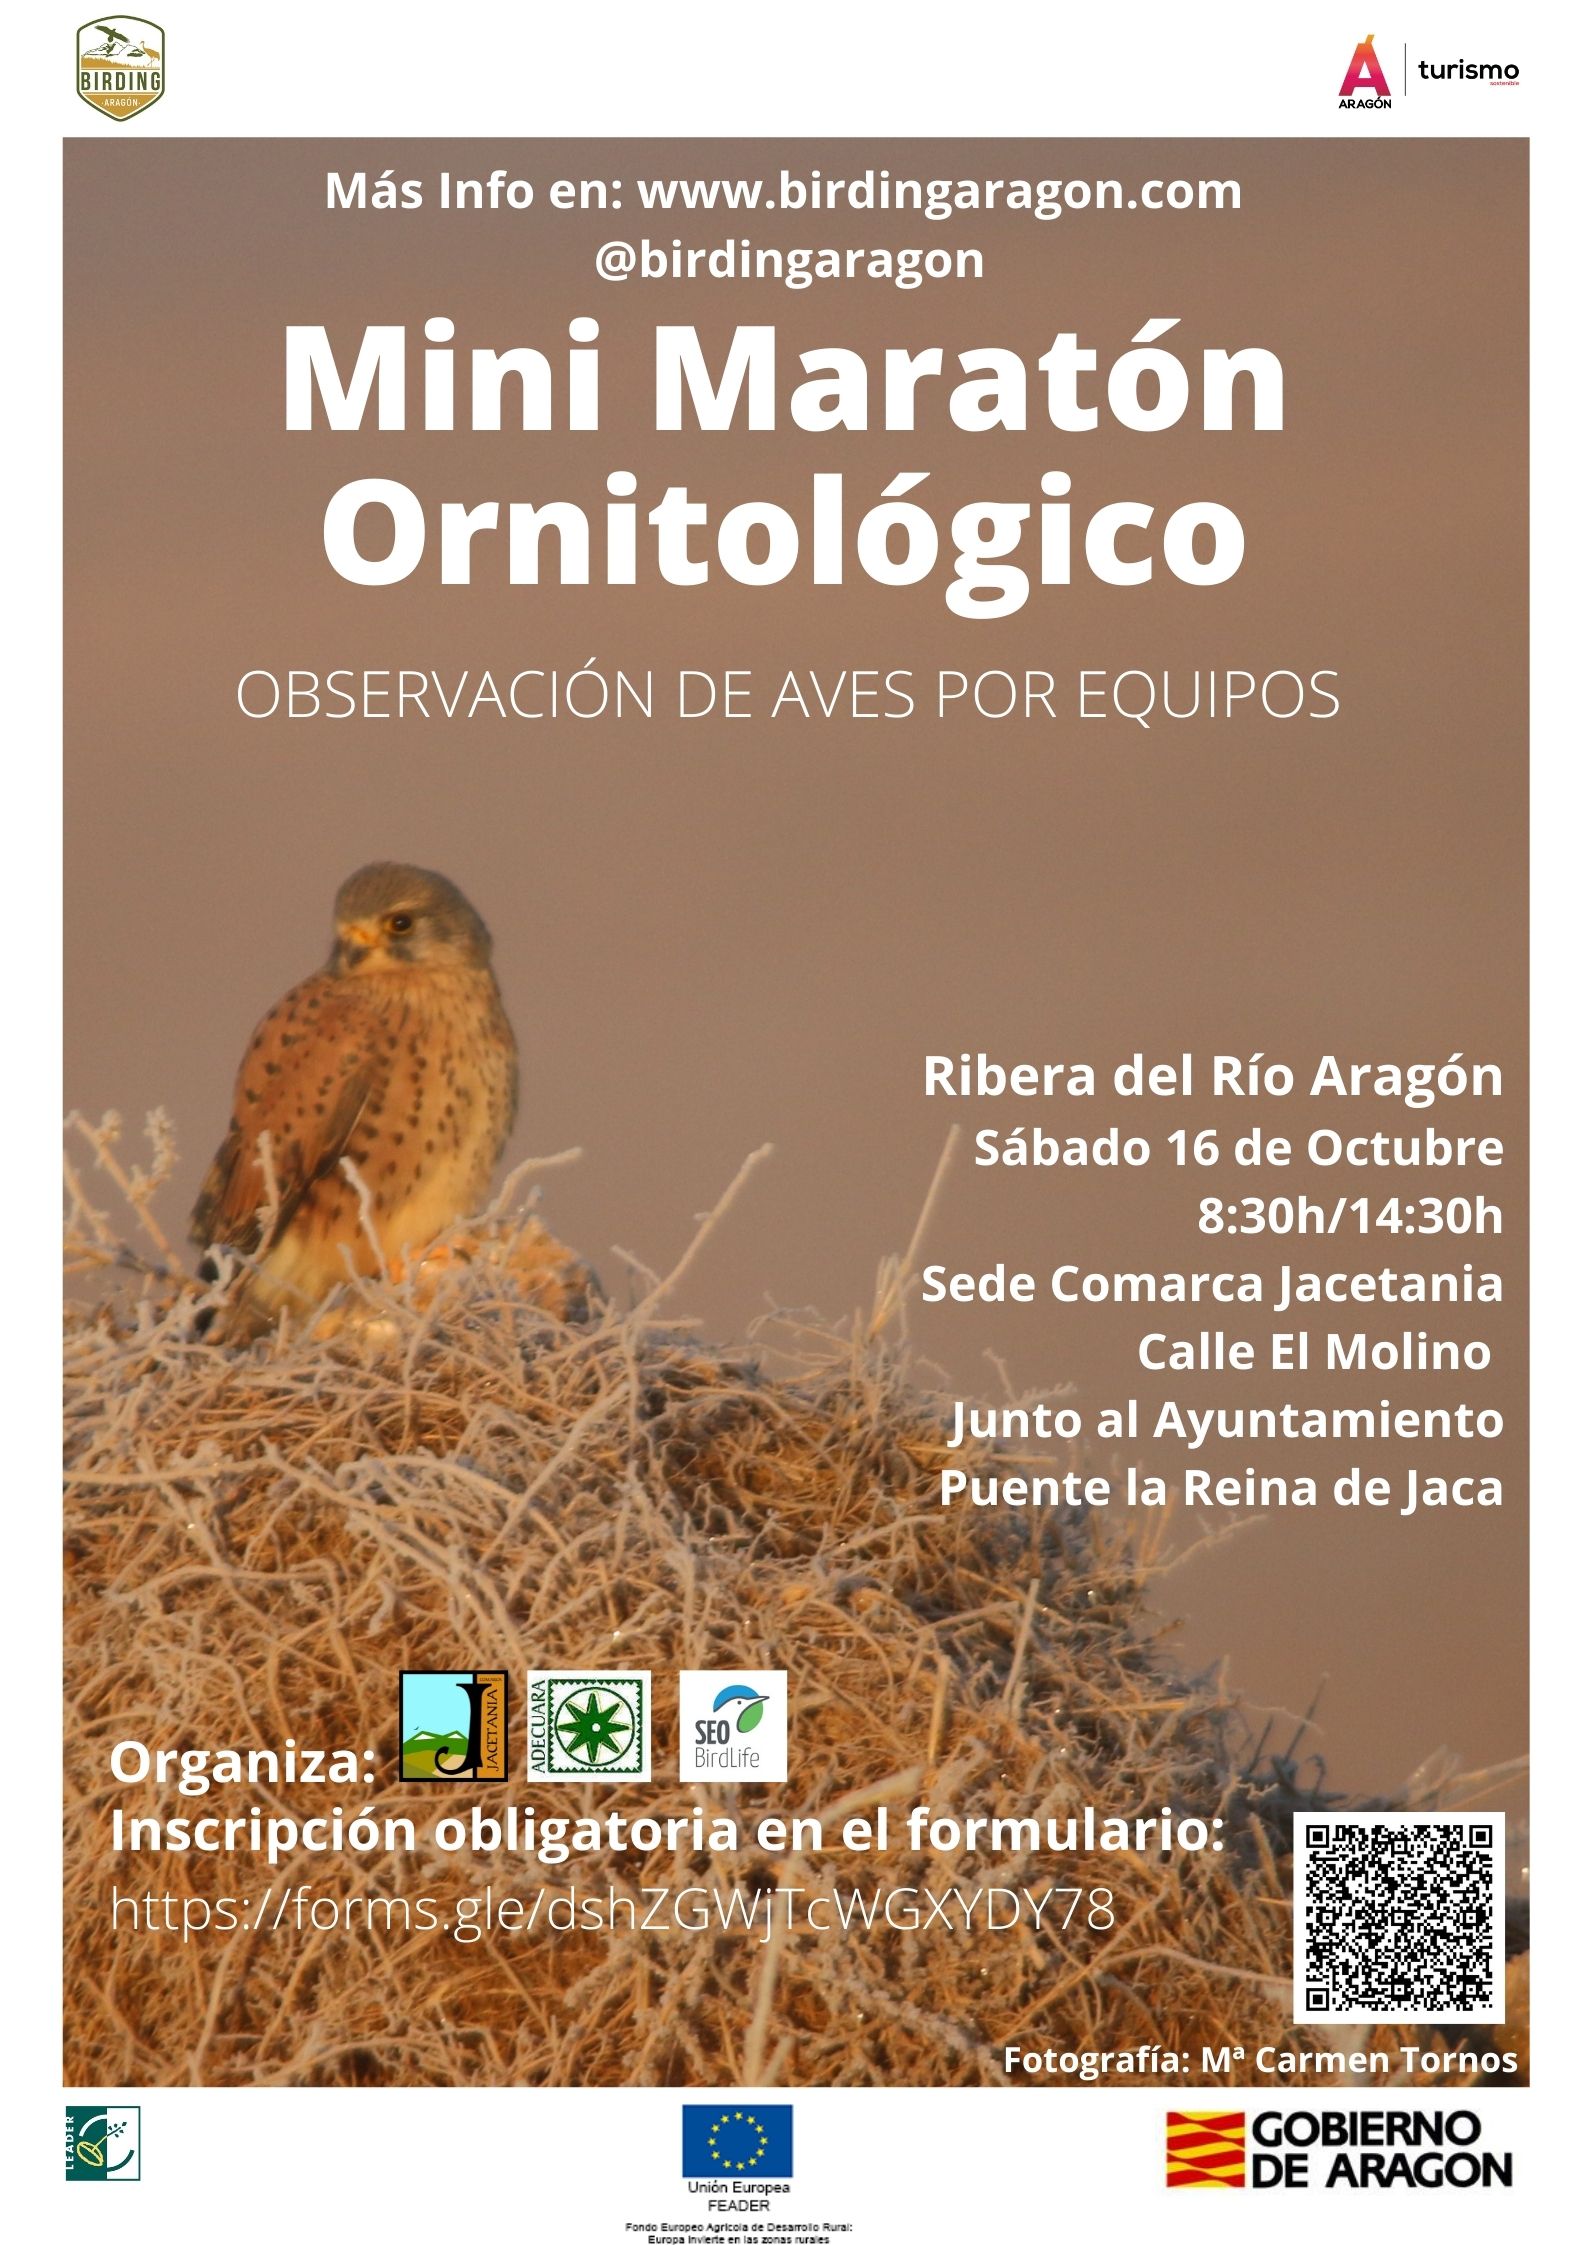 Mini-Maratón ornitológico en la Comarca de La Jacetania